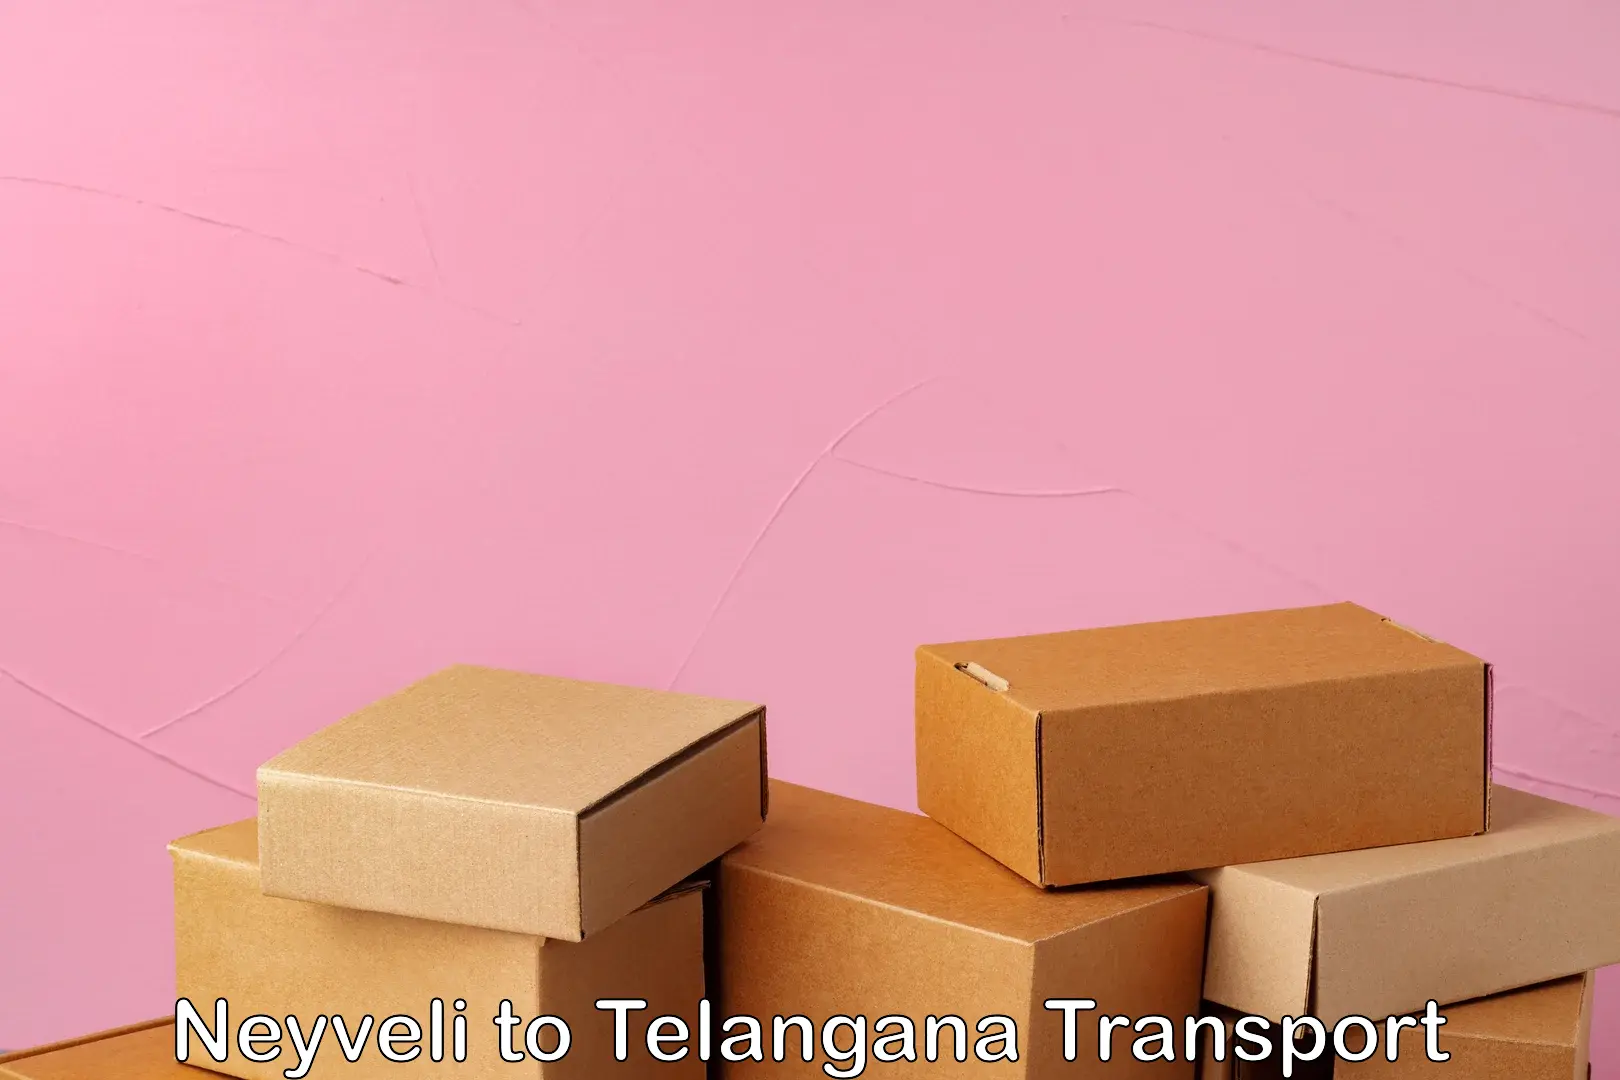 Nearest transport service in Neyveli to Tandur